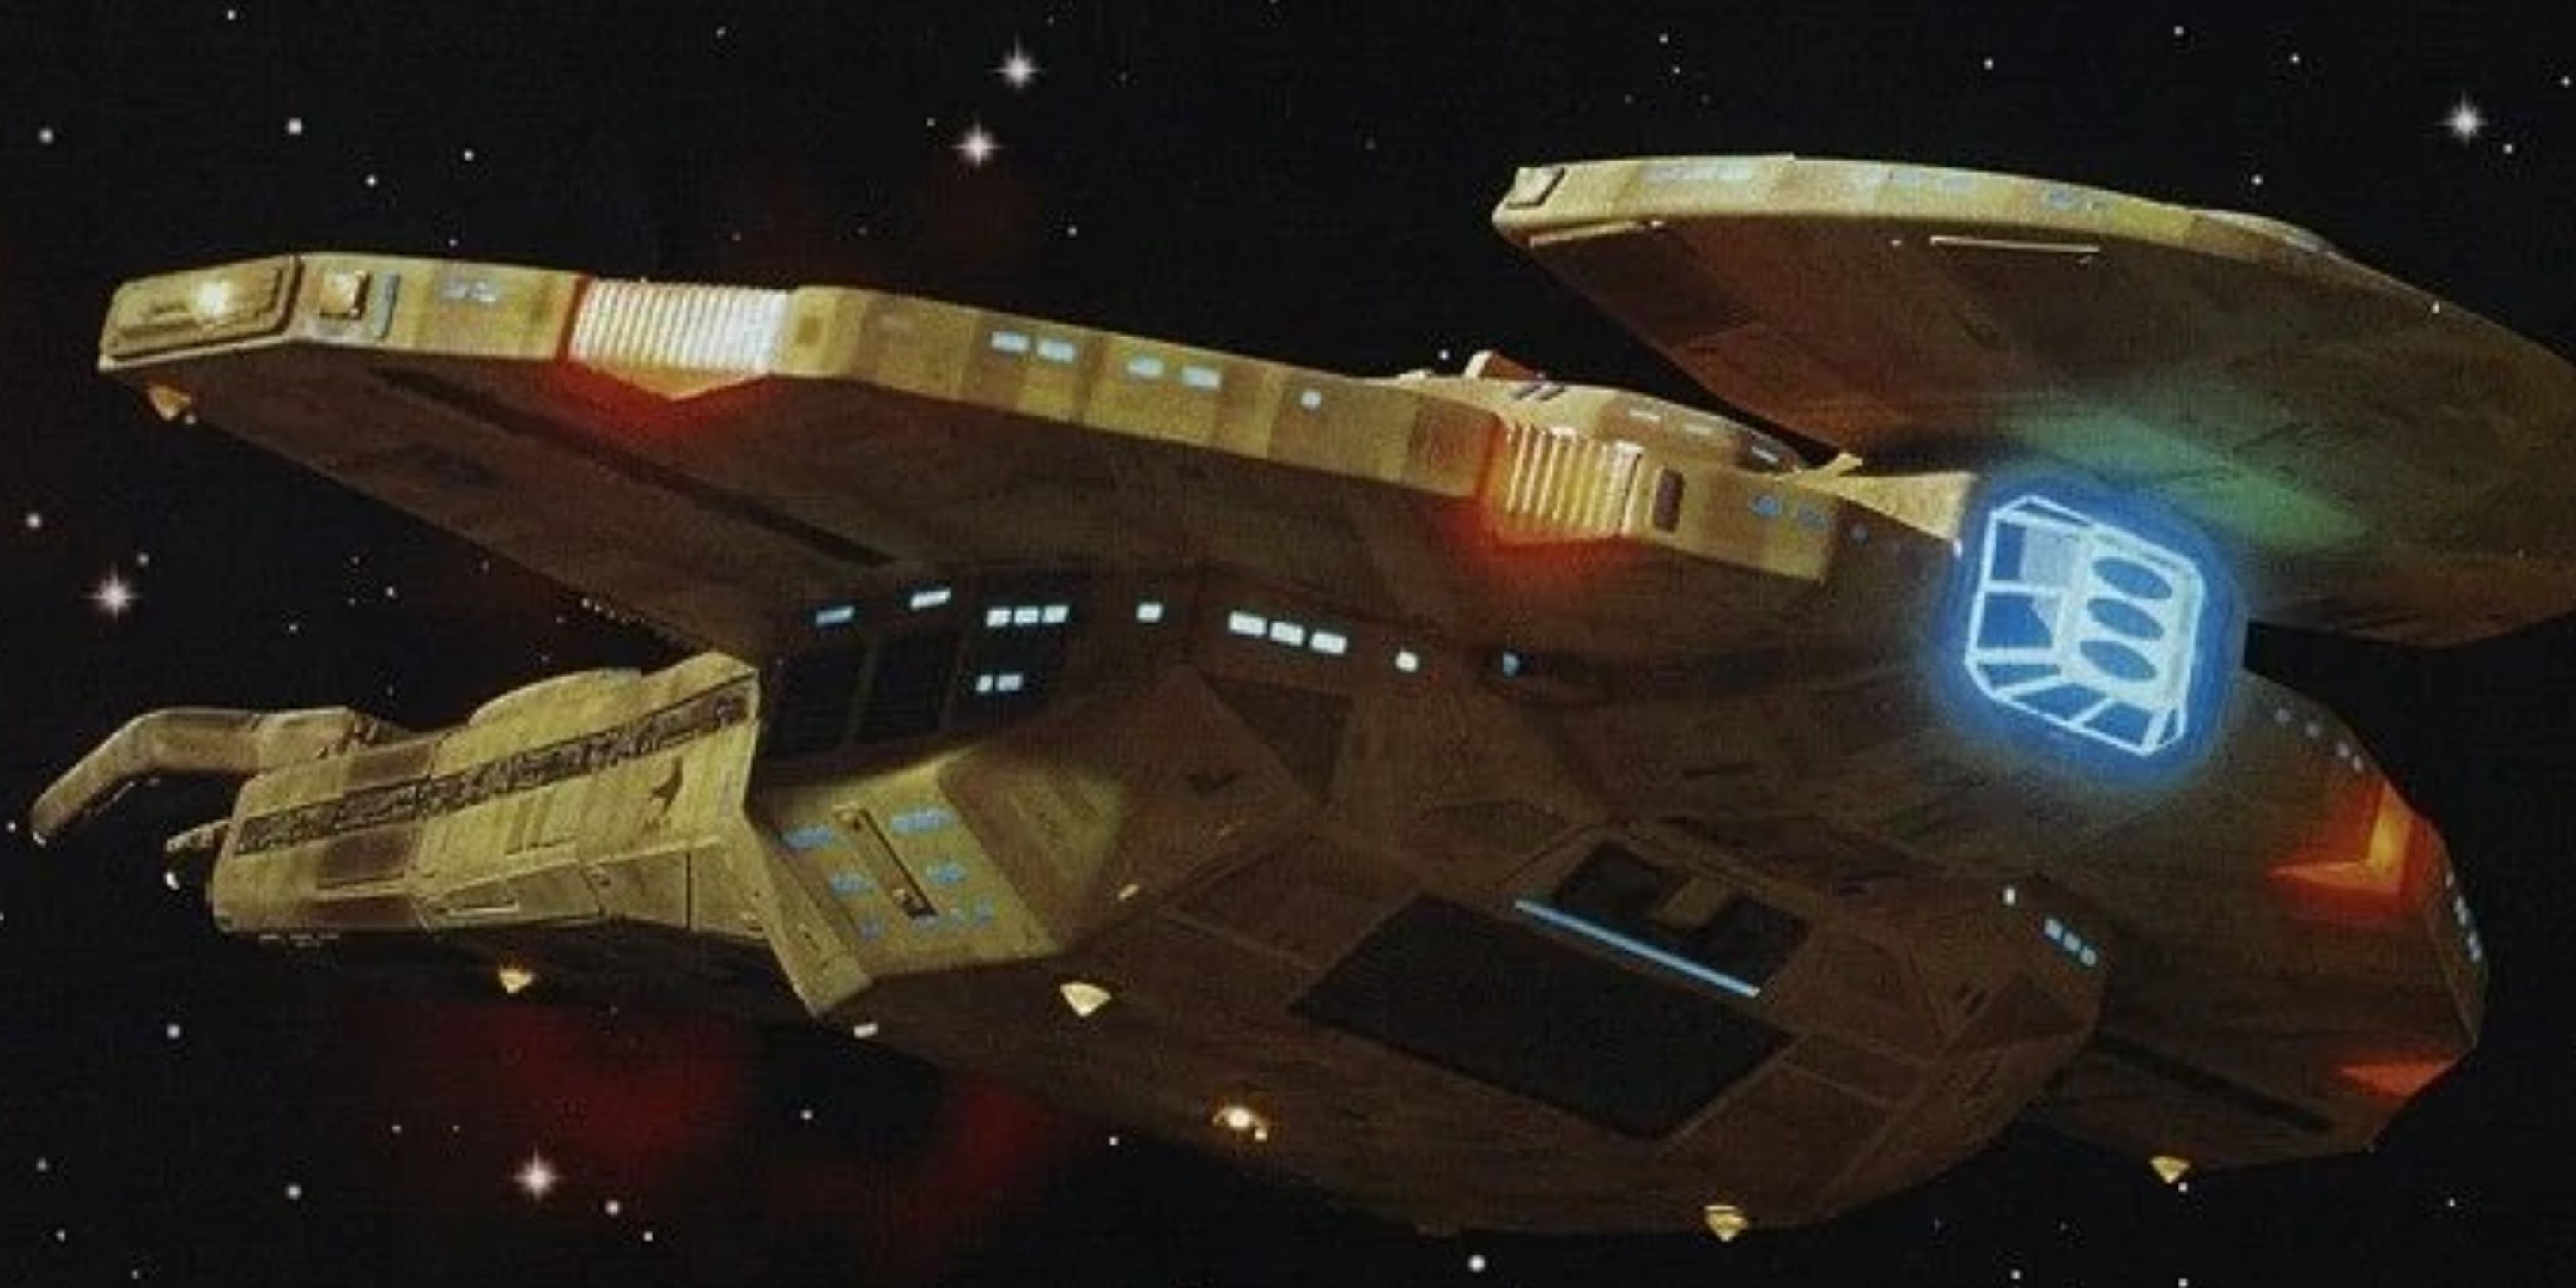 A Cardassian Galor-class battlecruiser from Star Trek